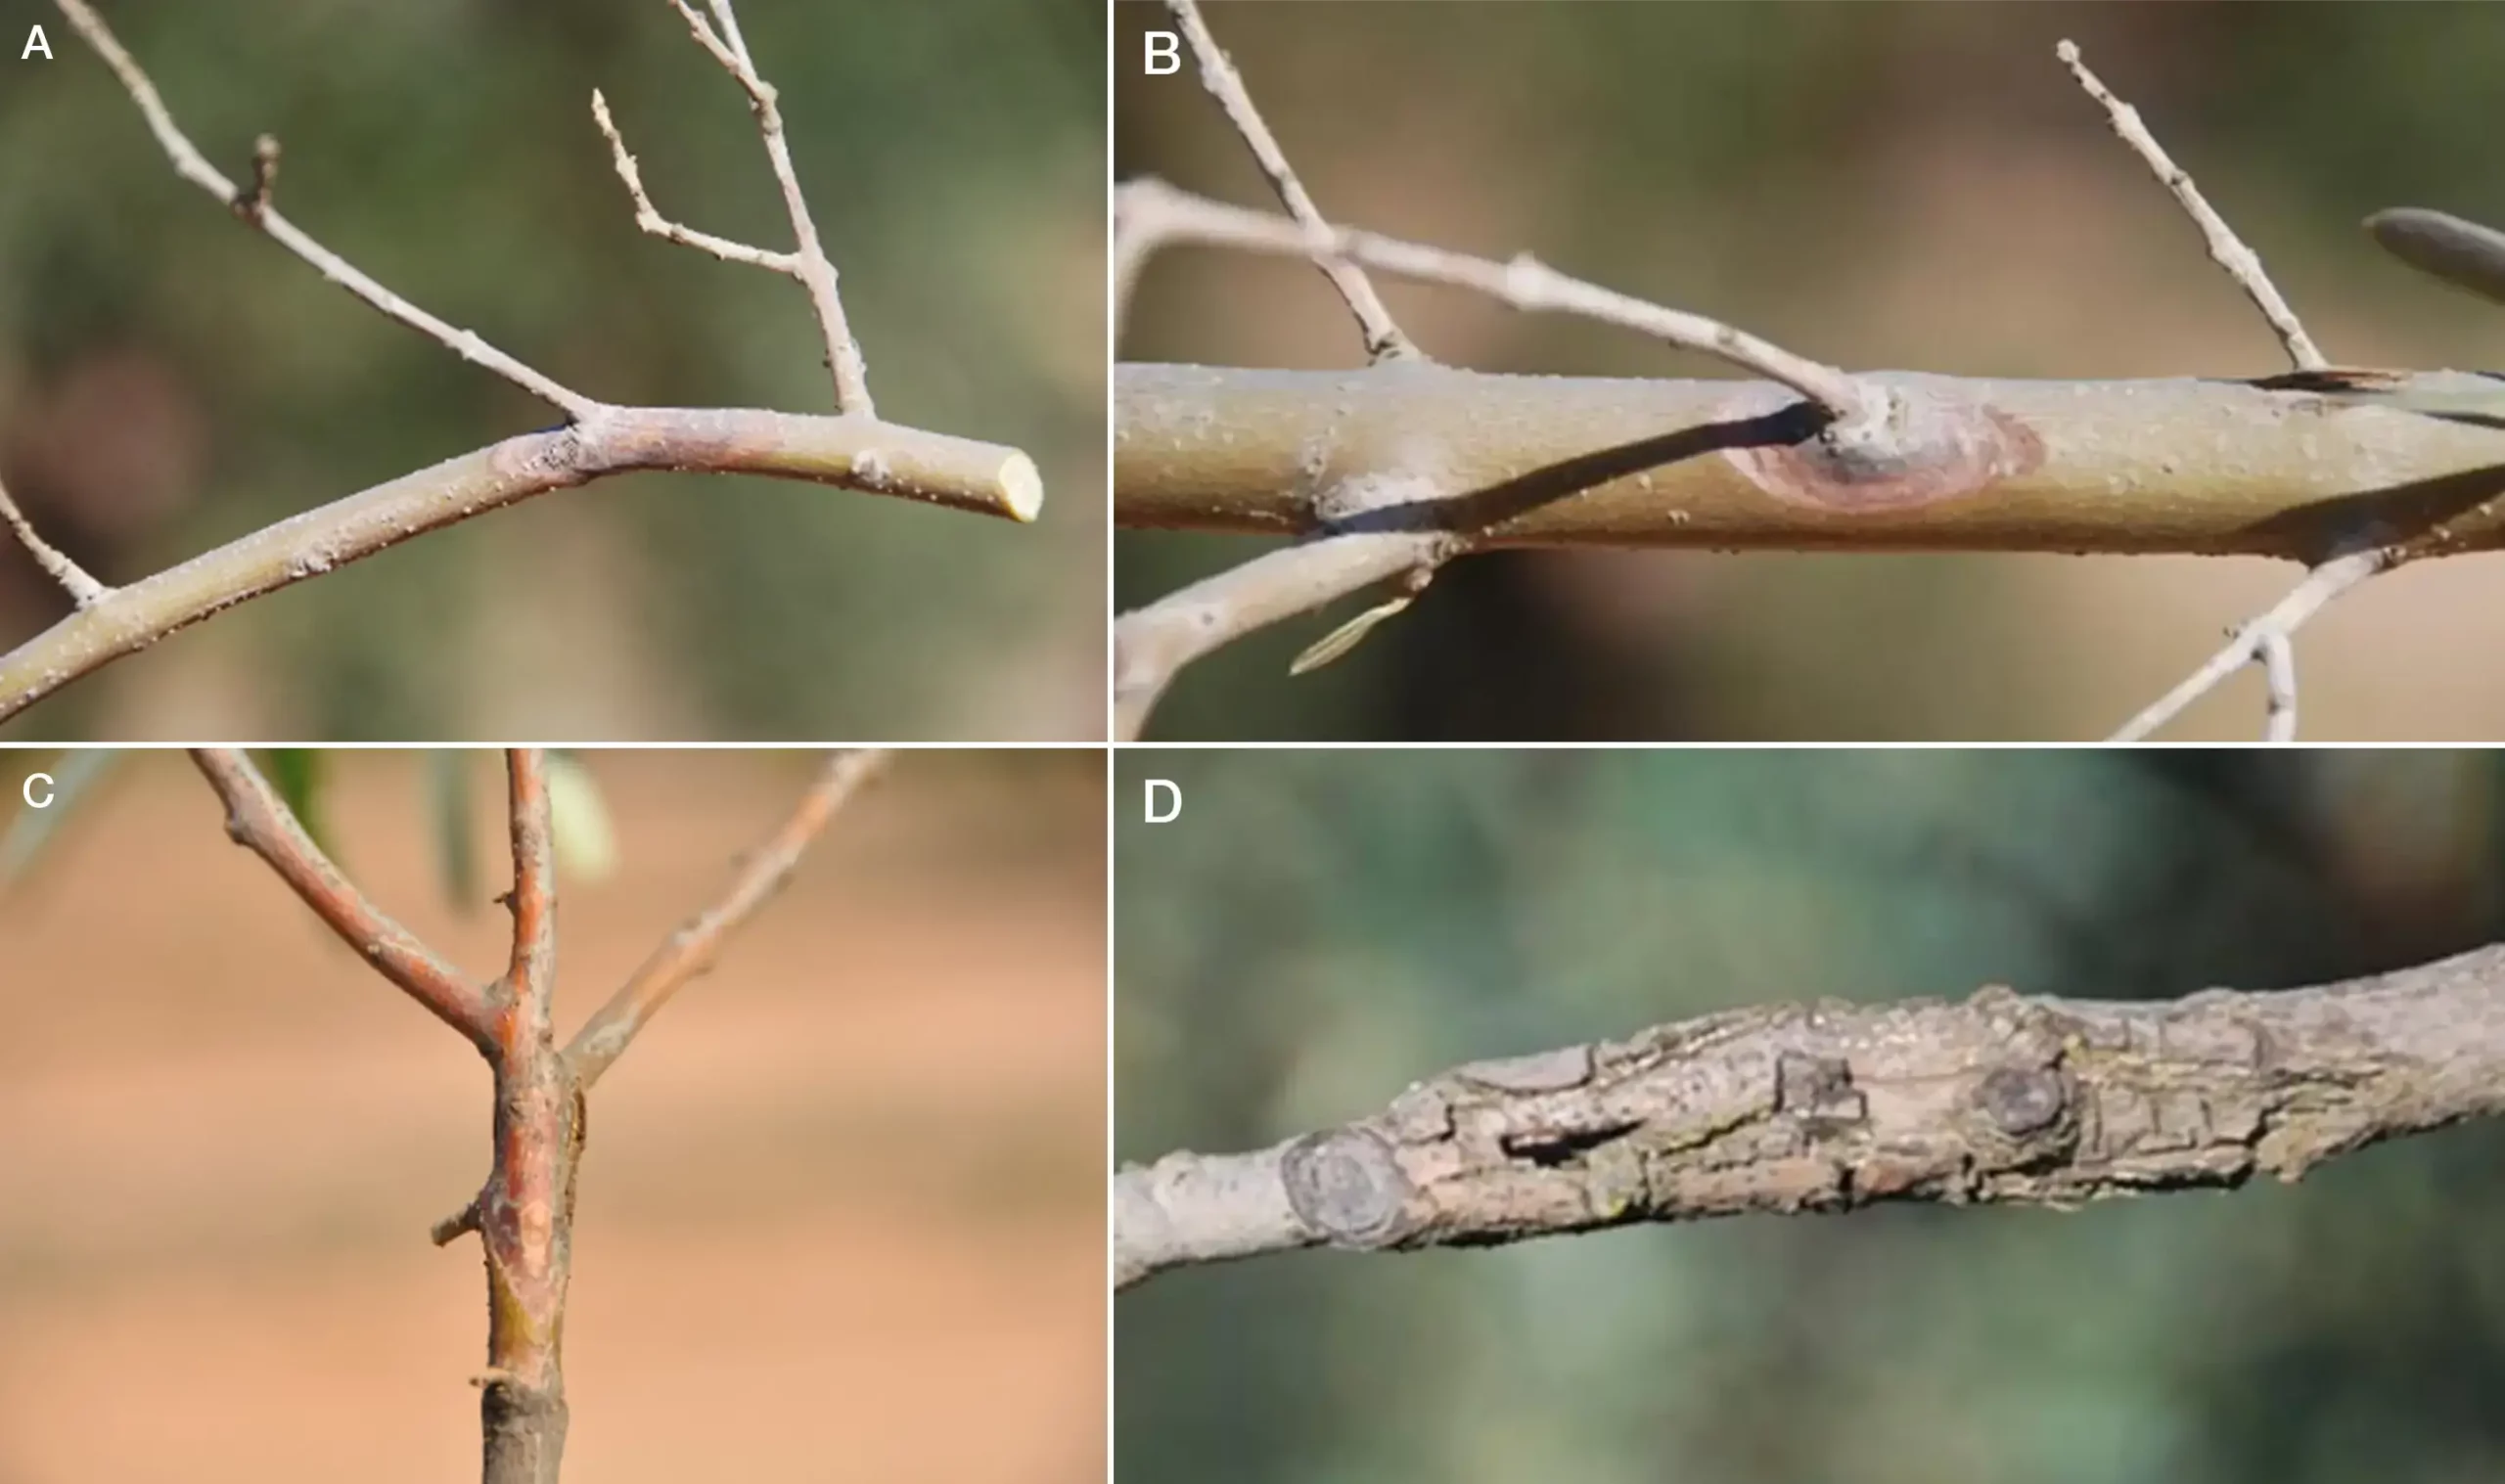 Figura 3. A-C, Chancros característicos de Neofusicoccum mediterraneum desarrolladas en ramas de olivo; D, chancros en estados muy avanzados del desarrollo de la enfermedad, mostrando la madera agrietada.